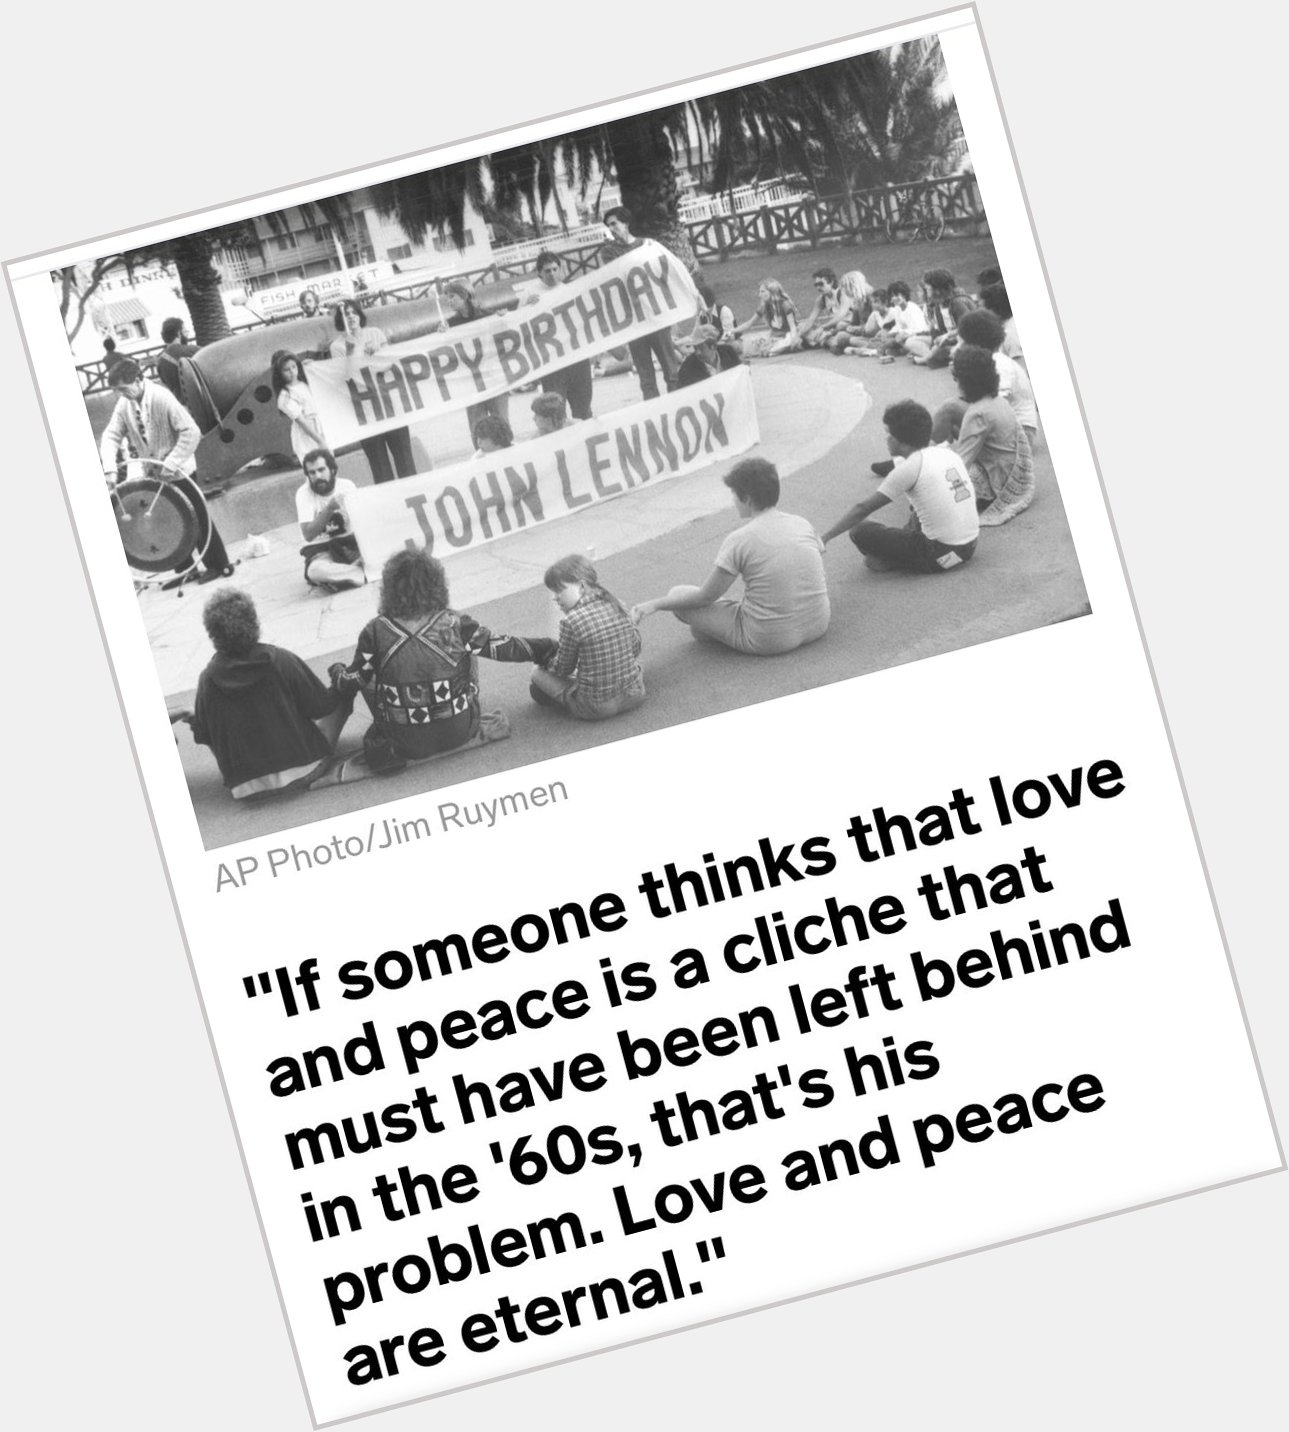 Love and Peace -John Lennon 
Happy Birthday         